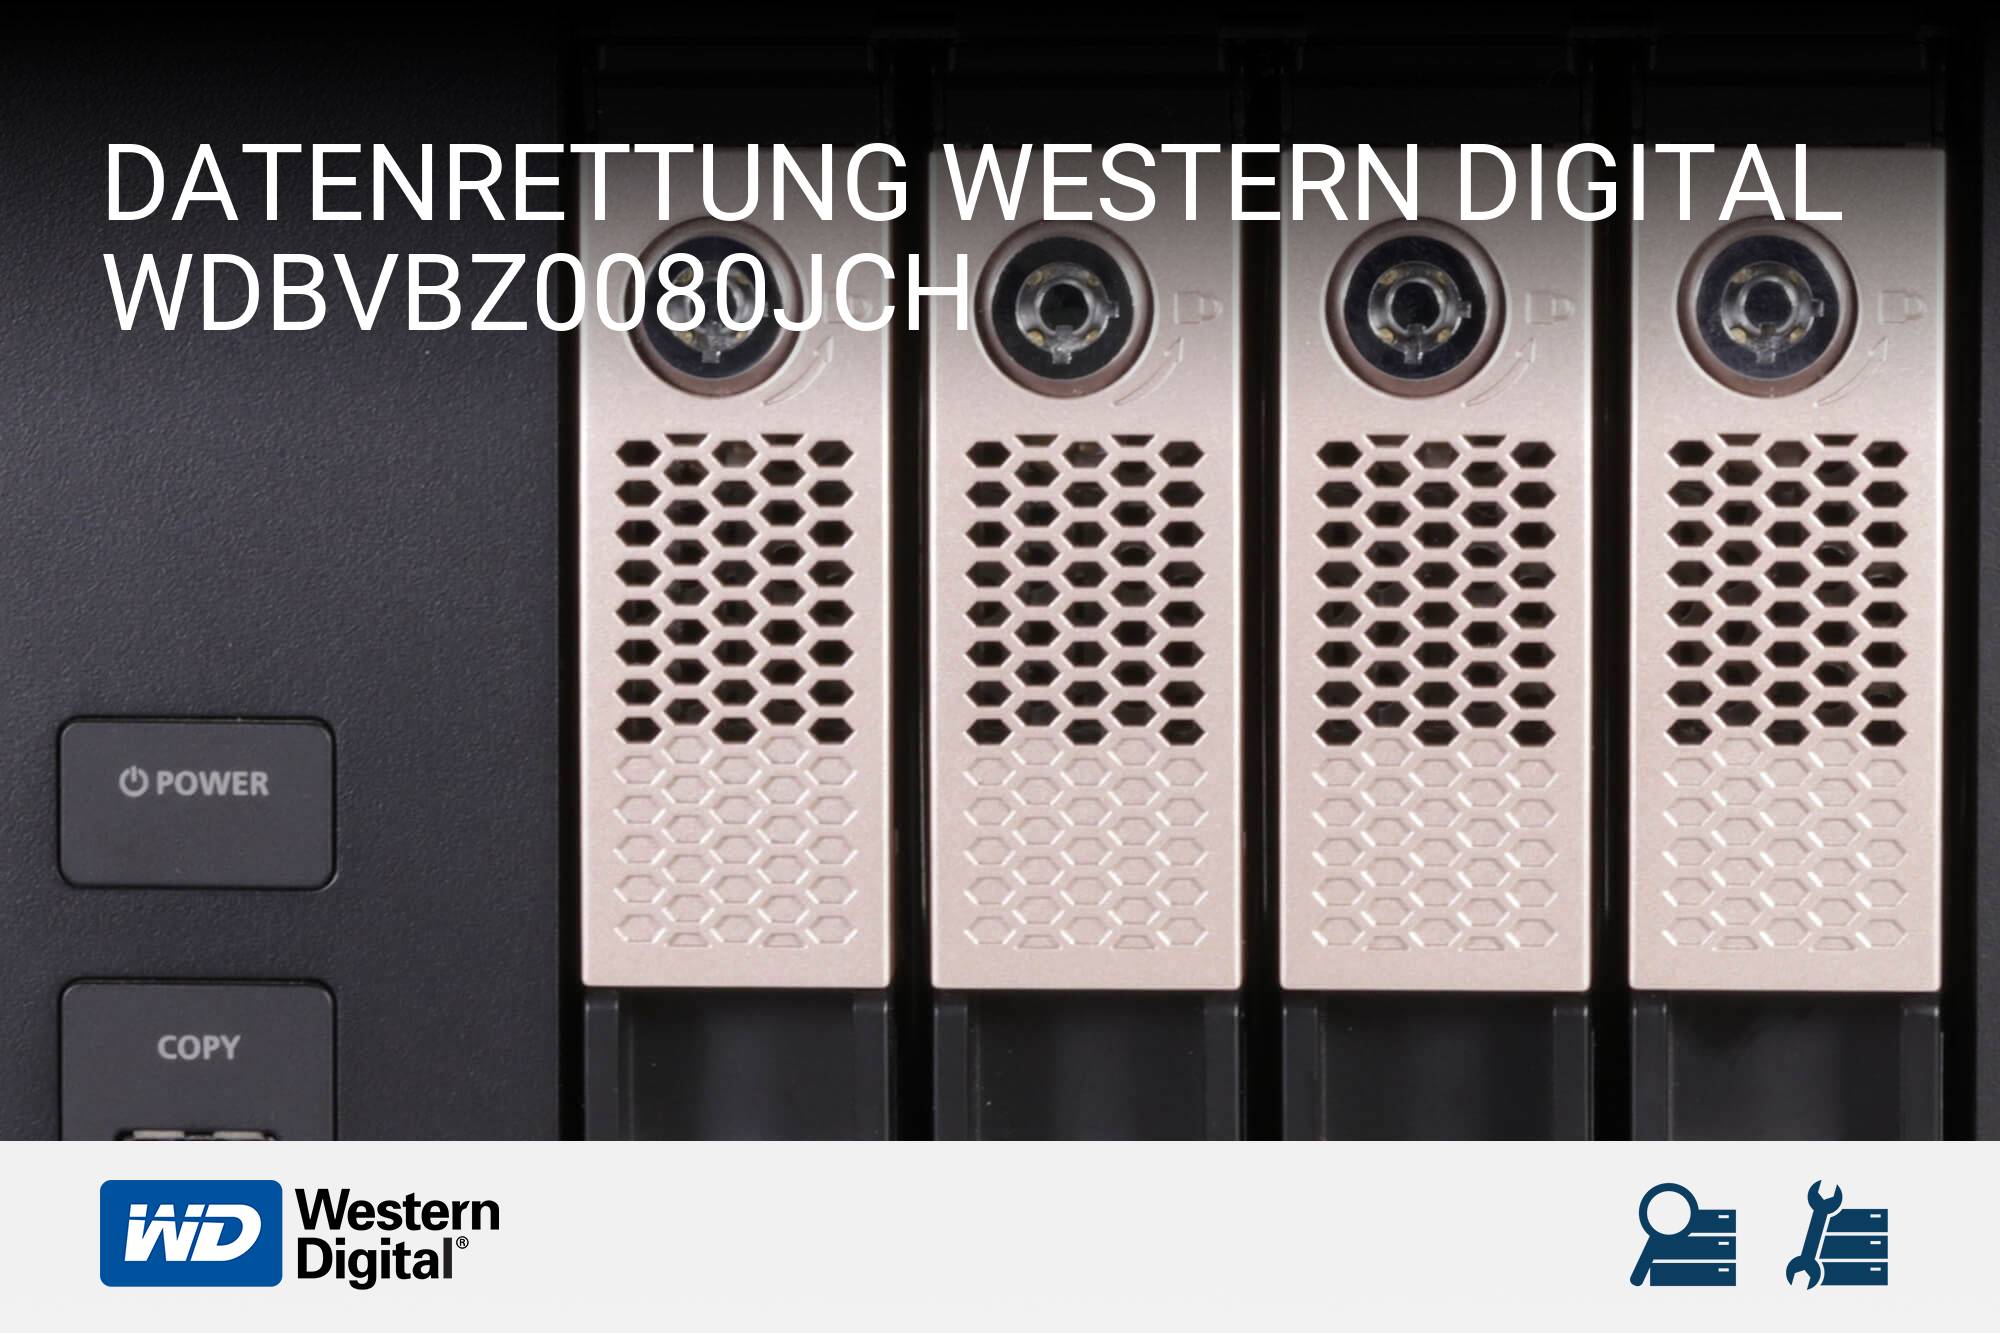 Western Digital WDBVBZ0080JCH